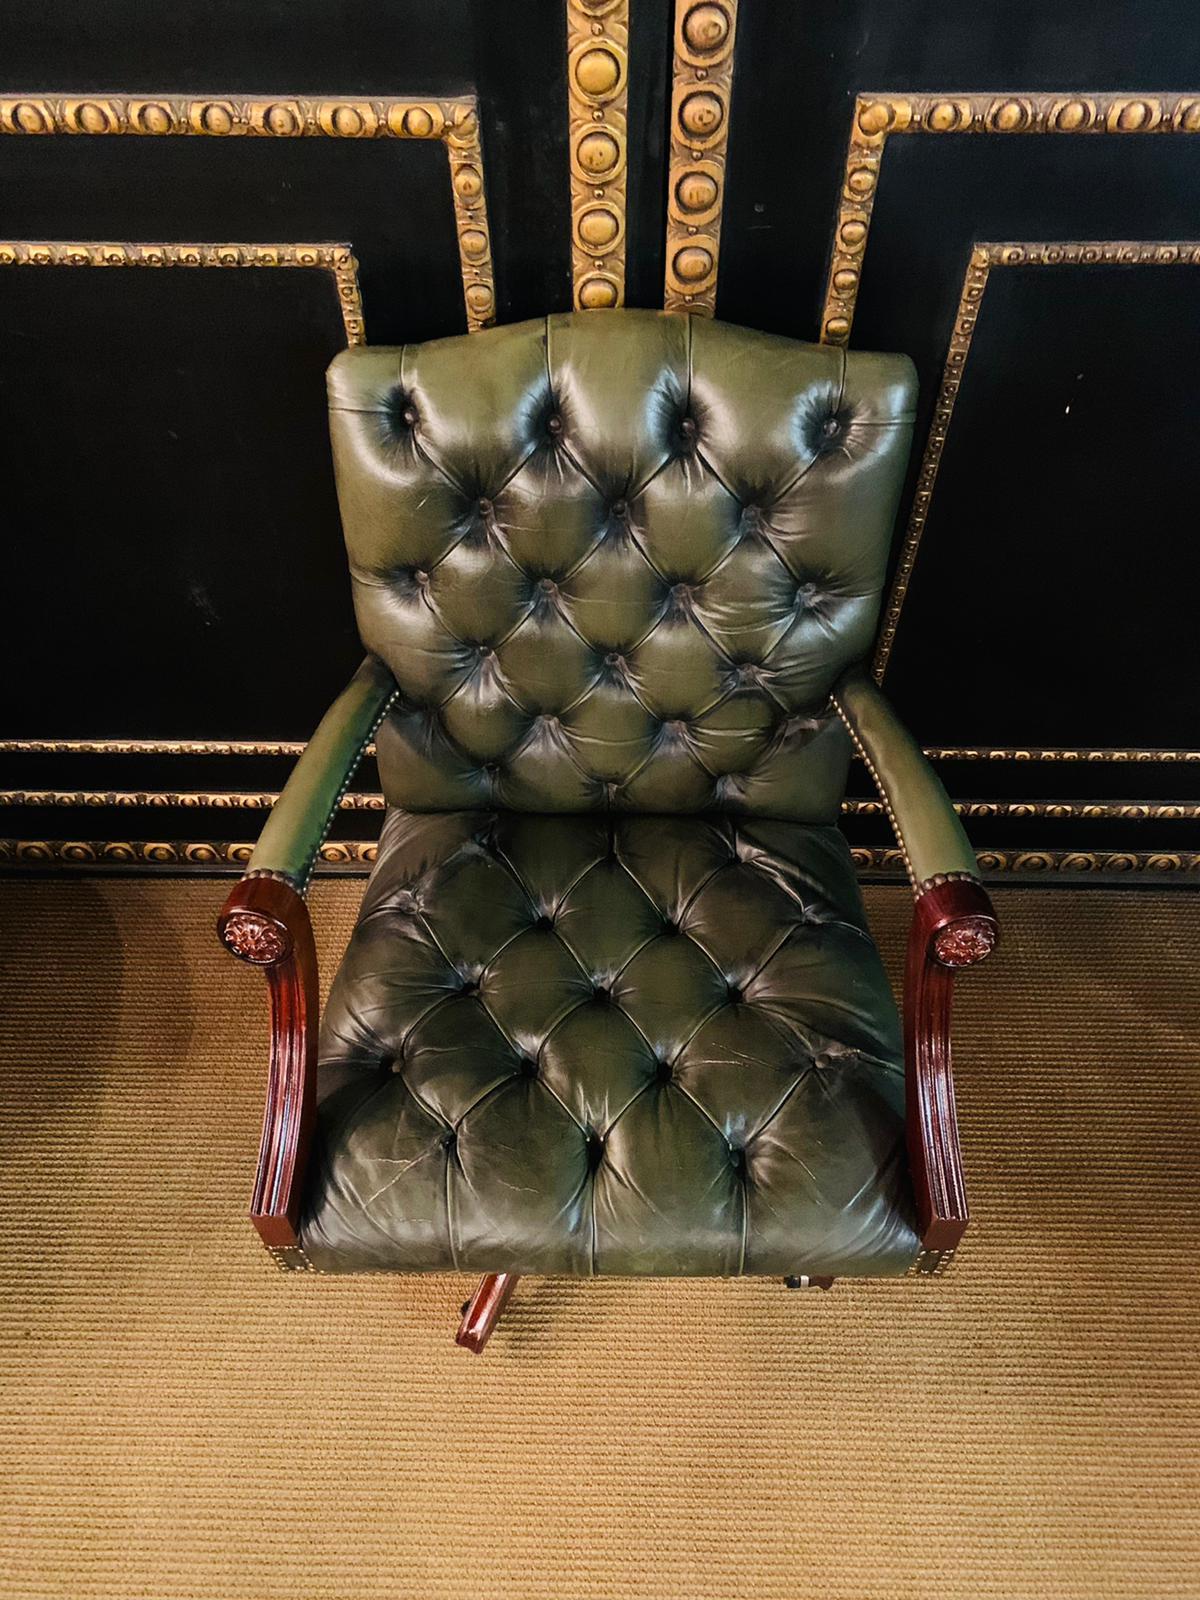 Superbe fauteuil de capitaine en cuir vert foncé:: fabriqué à la main en Angleterre. Le cadre est en acajou massif et magnifiquement travaillé avec une belle sculpture sur la tête:: le cuir est une peau de bovin anglais:: beau et épais:: chaque